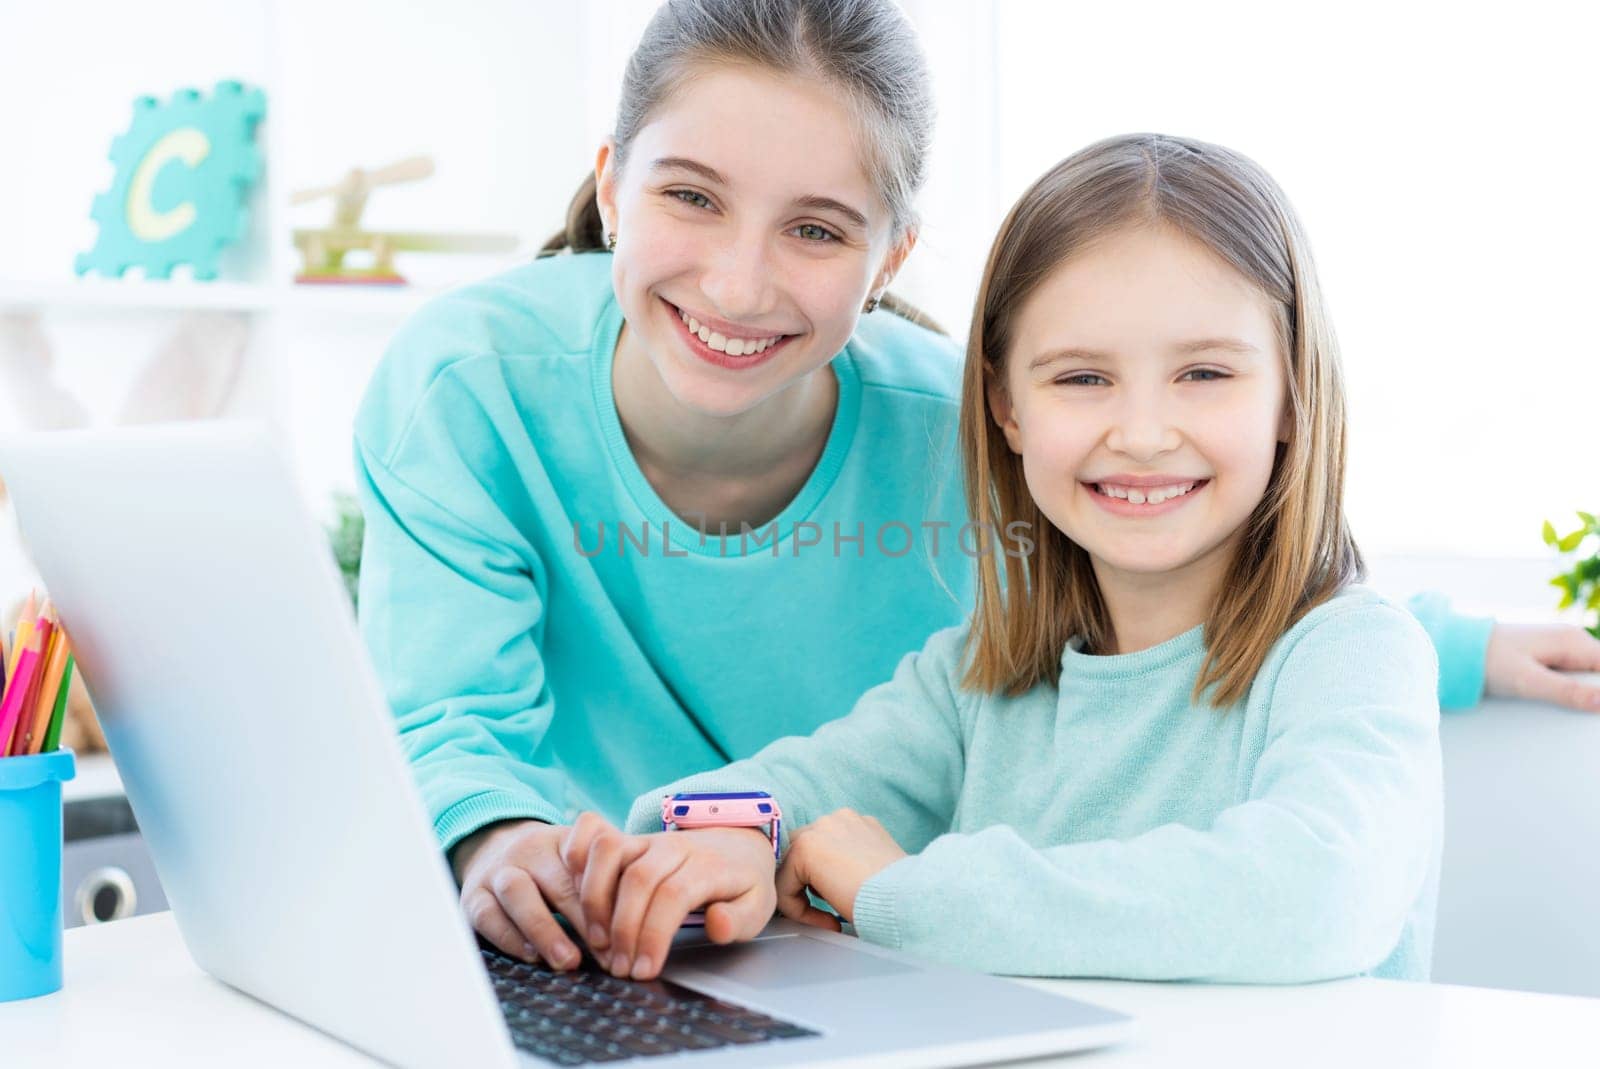 Smiling sisters next to laptop by GekaSkr